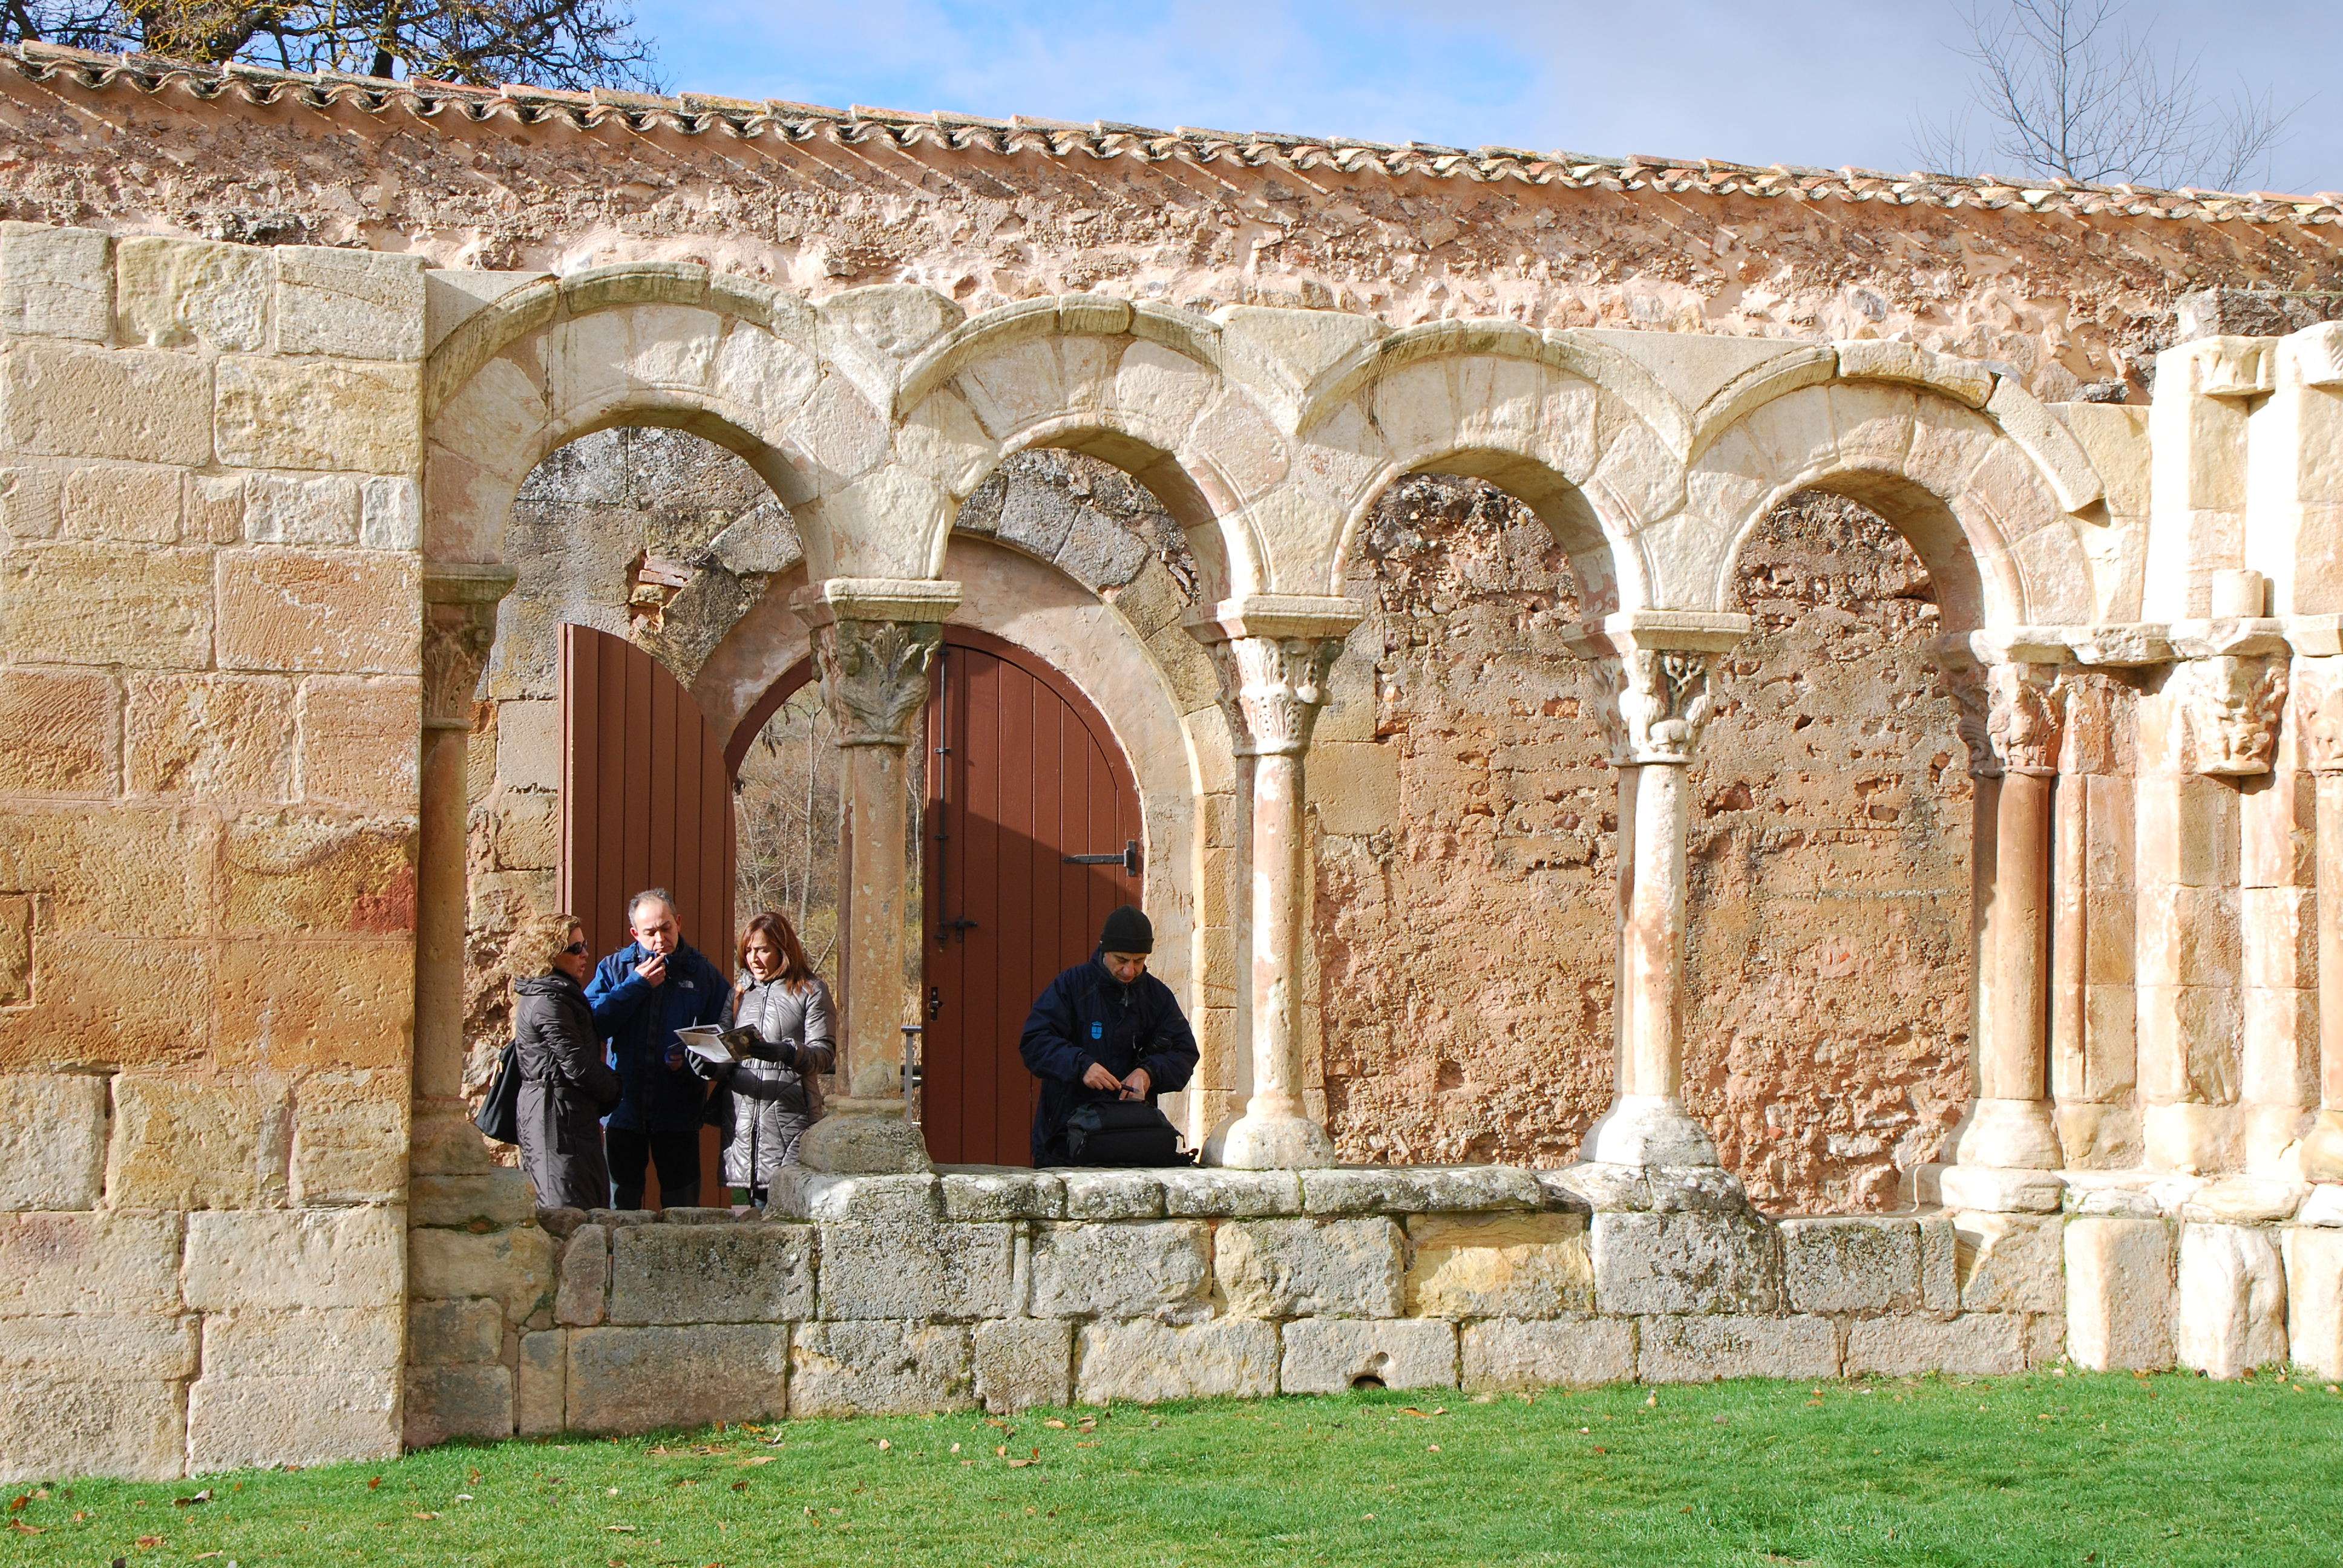 Monasterio de San Juan de Duero. Un enigma - Blogs of Spain - Monasterio de San Juan de Duero (4)